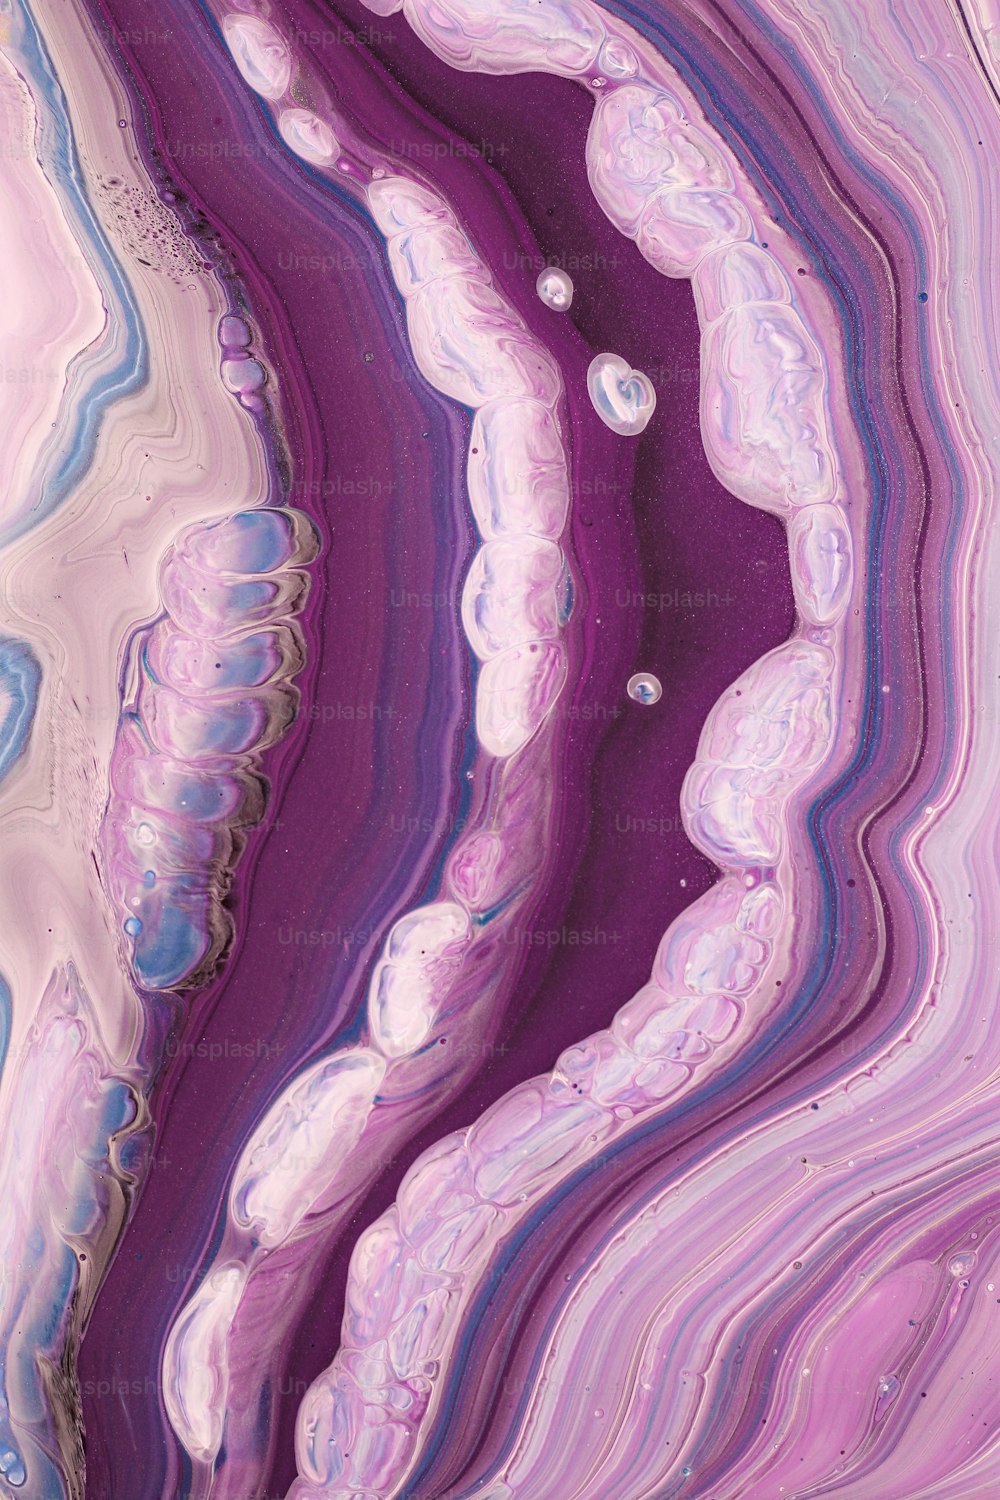 Un primer plano de una canica púrpura y blanca